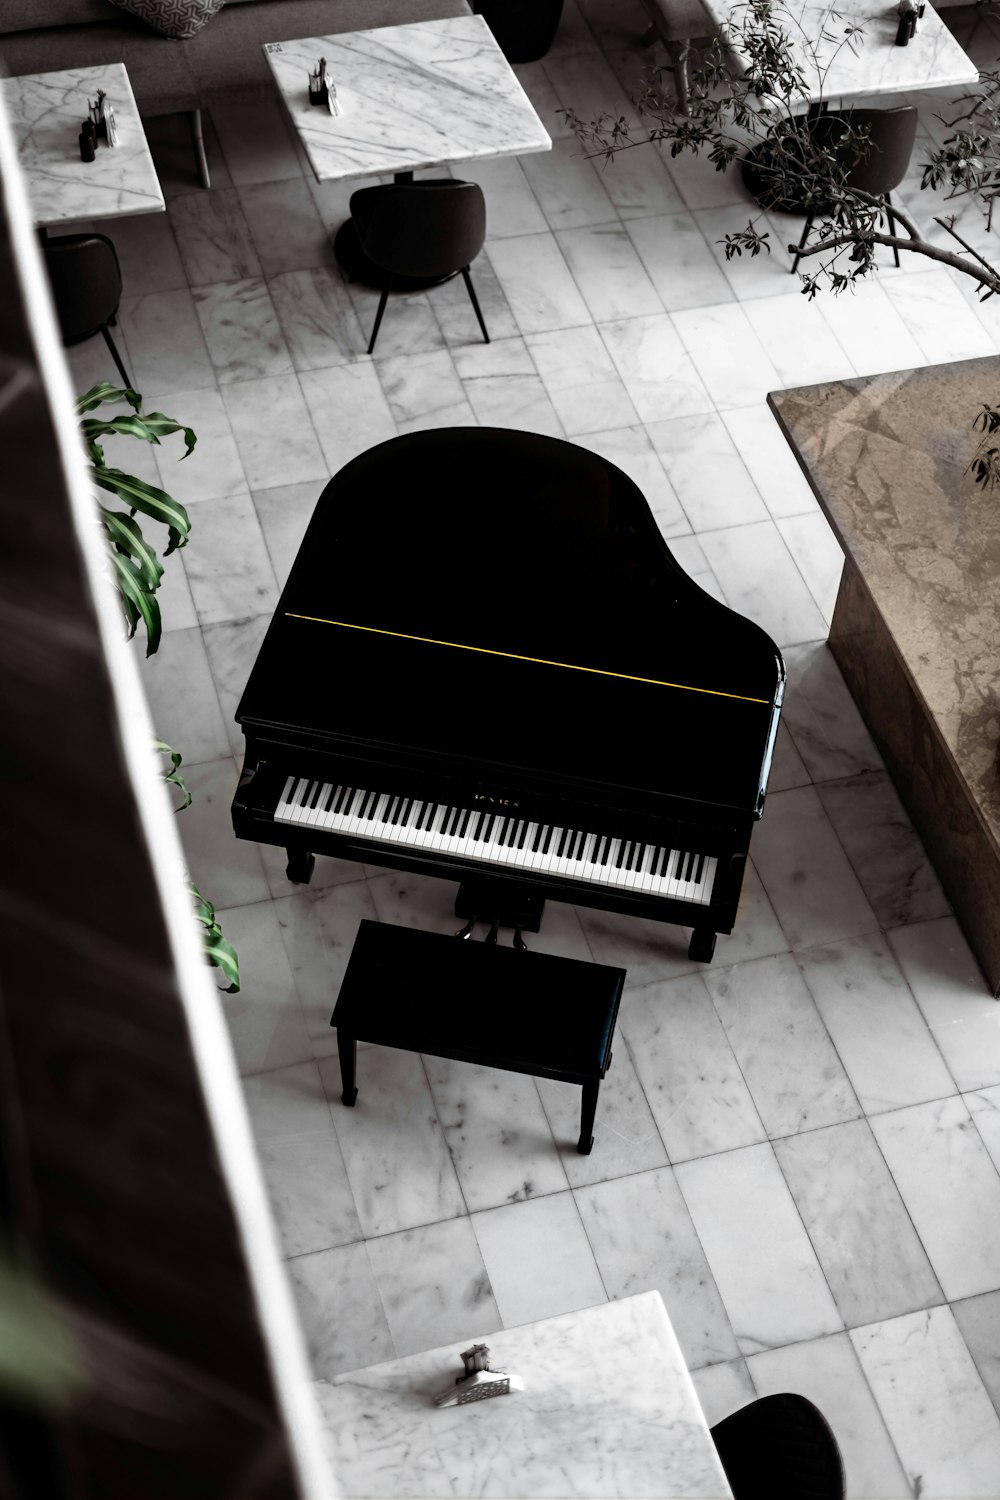 1K+ imágenes de piano de cola | Descargar imágenes gratis en Unsplash